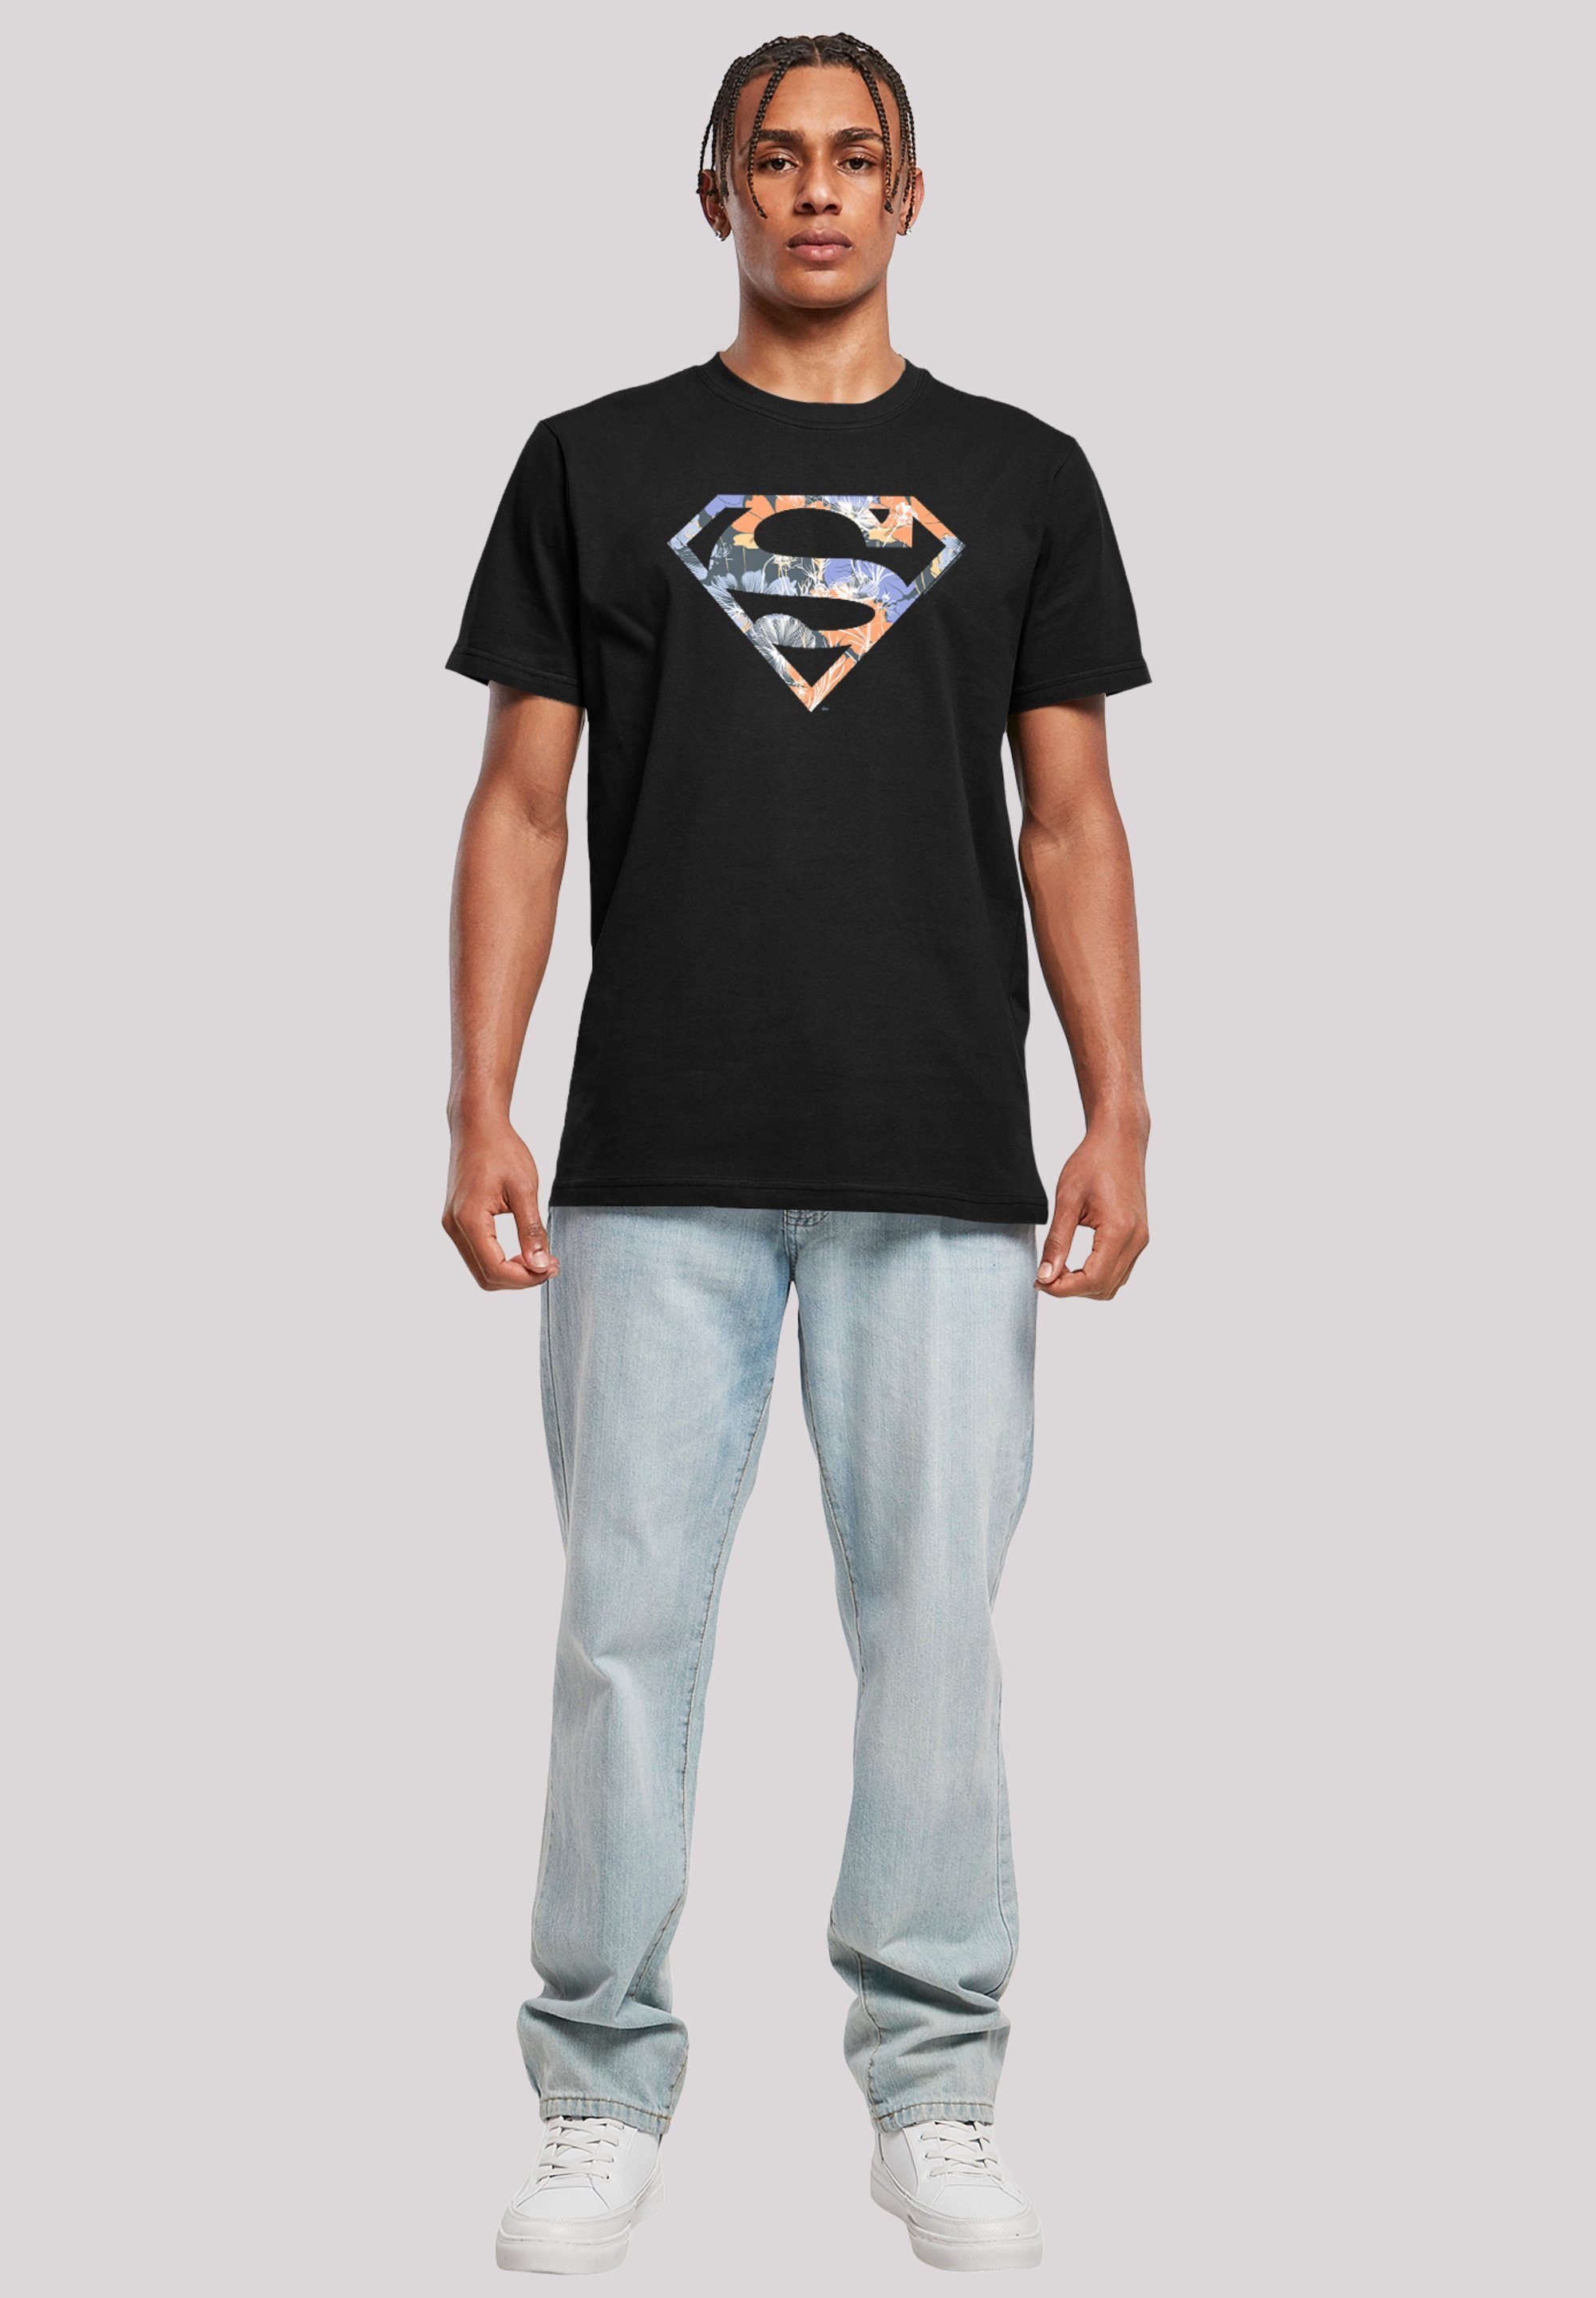 T-Shirt DC Superheld Floral Merch,Regular-Fit,Basic,Bedruckt T-Shirt Logo F4NT4STIC Comics Superman Herren,Premium schwarz